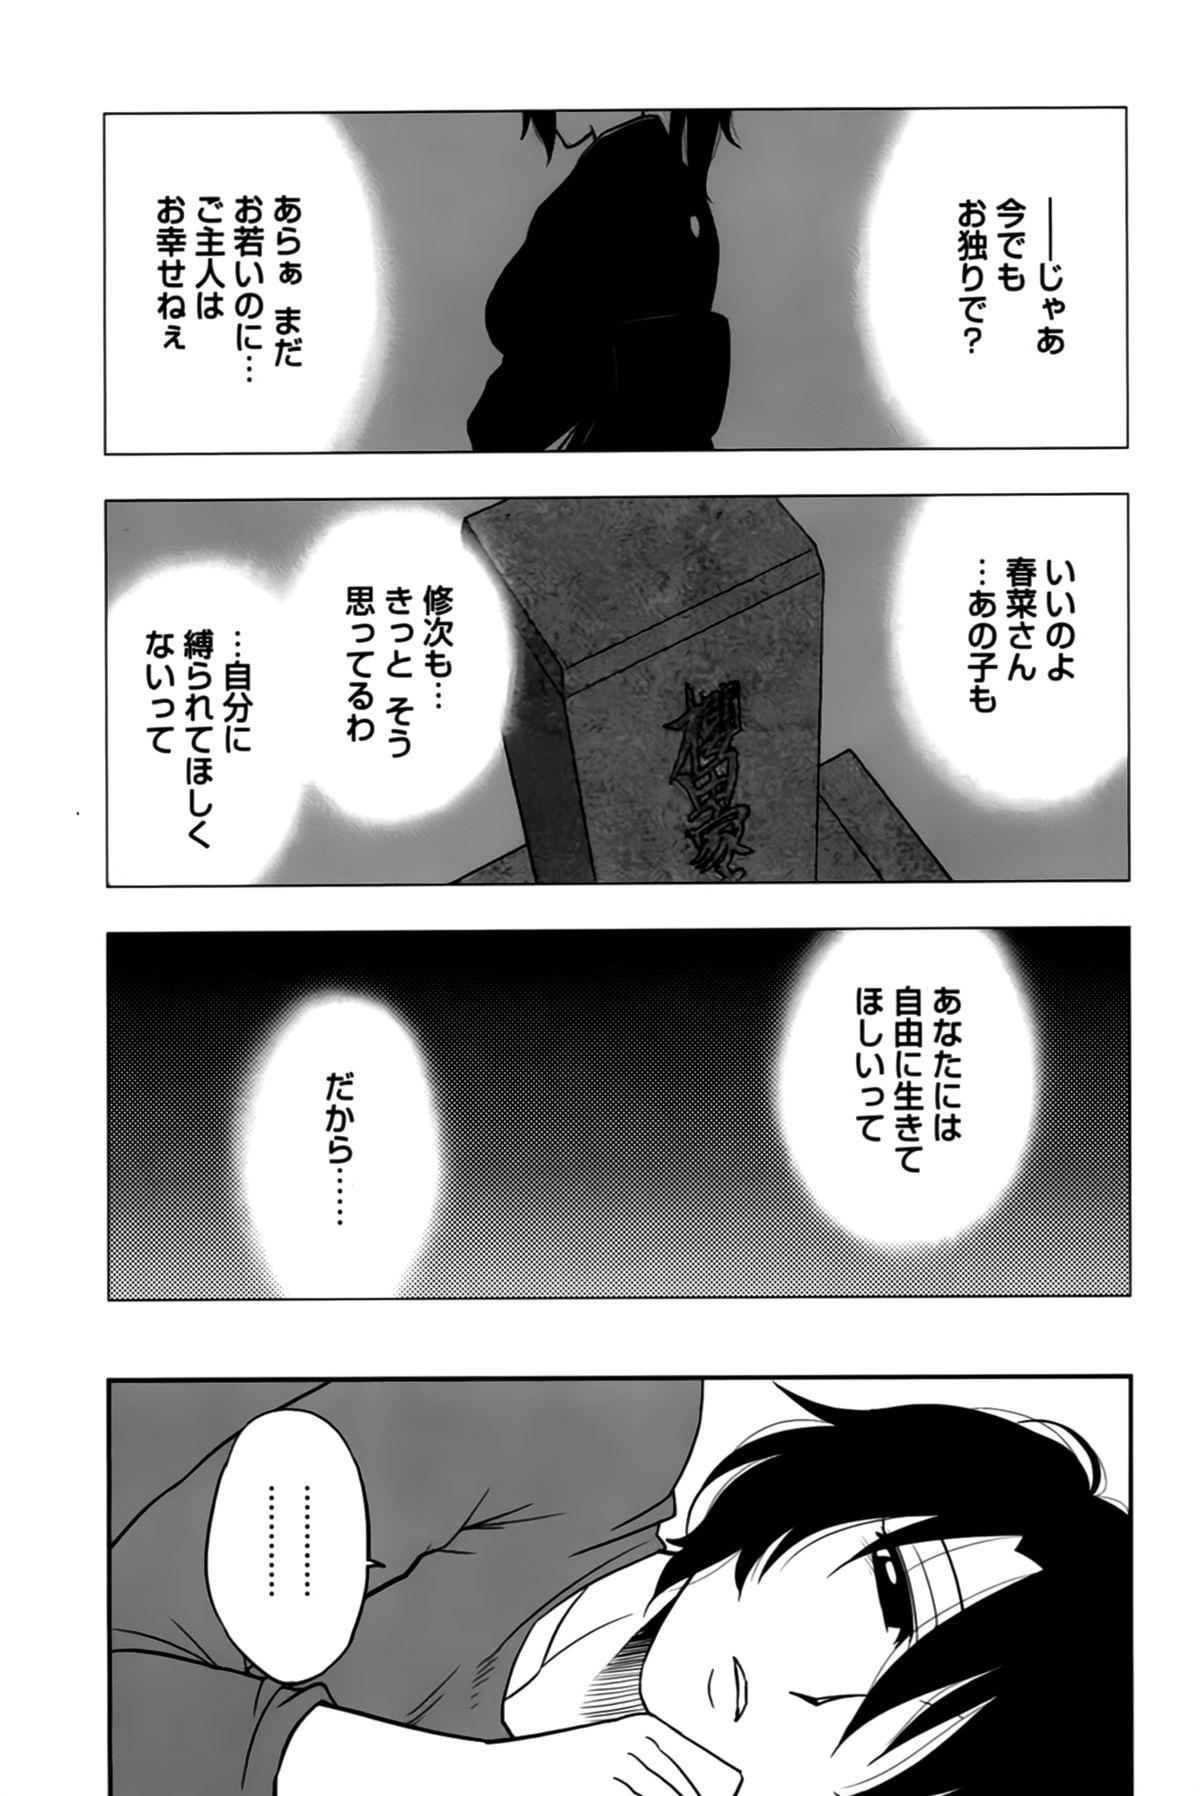 Sakurada-san to Boku no Koto Vol. 2 26